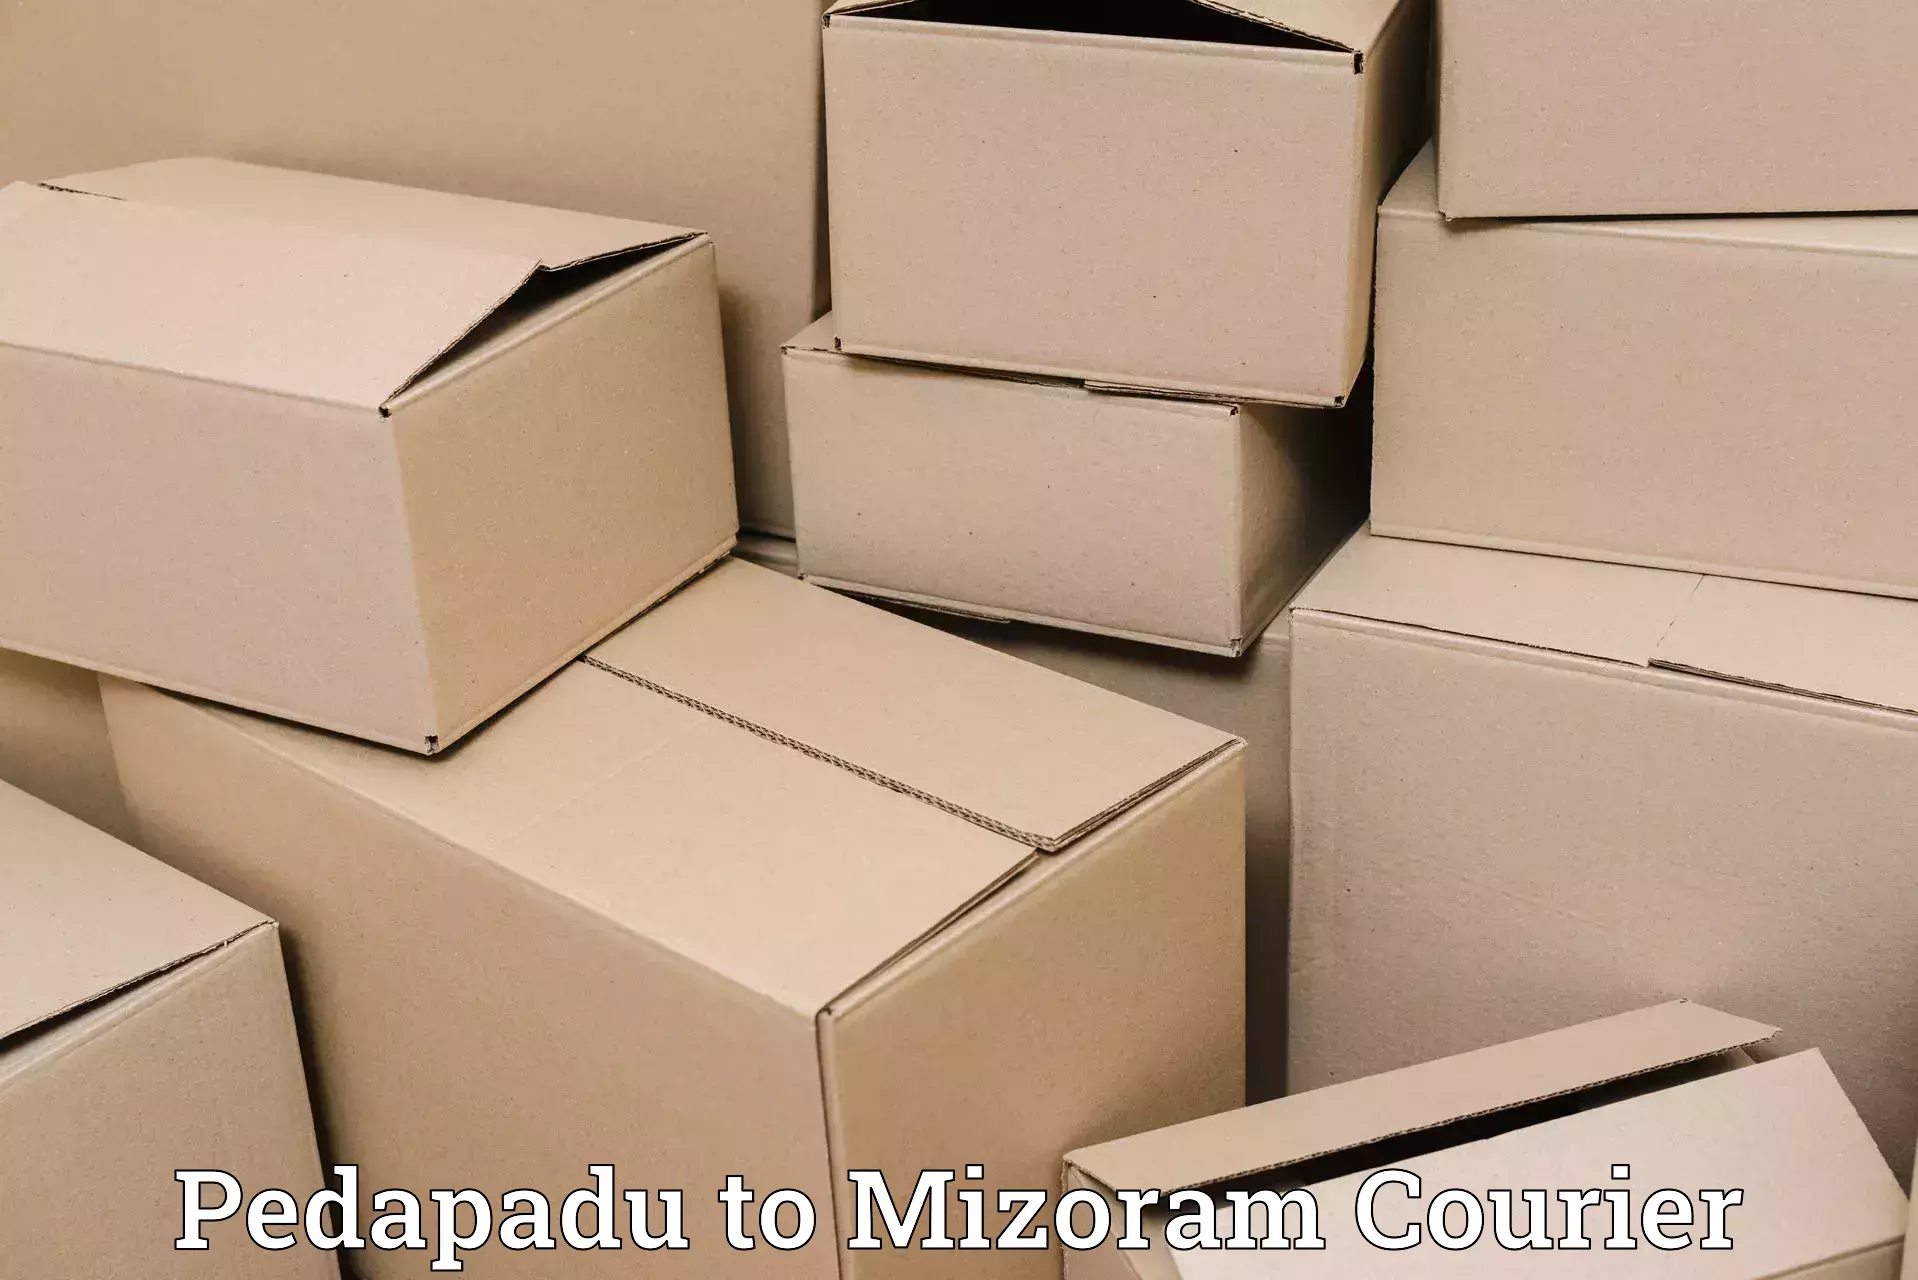 24/7 courier service in Pedapadu to Lunglei